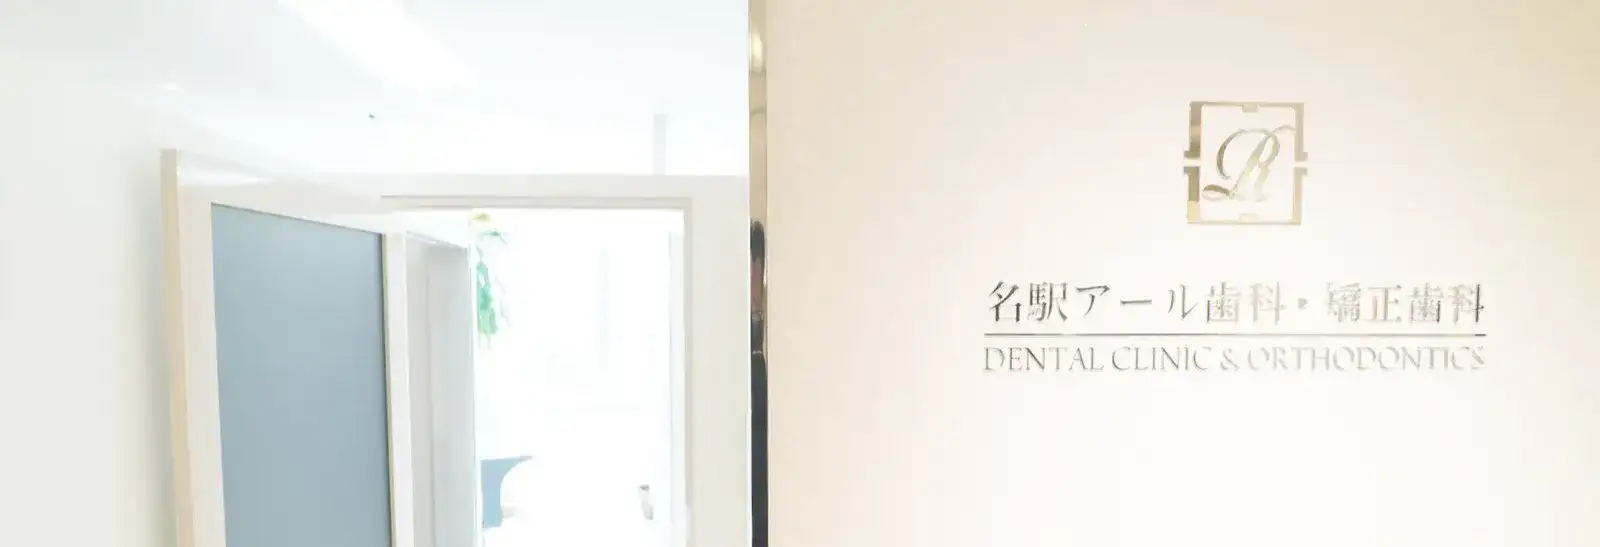 歯科医院_名駅アール歯科・矯正歯科_受付(アイキャッチ用)